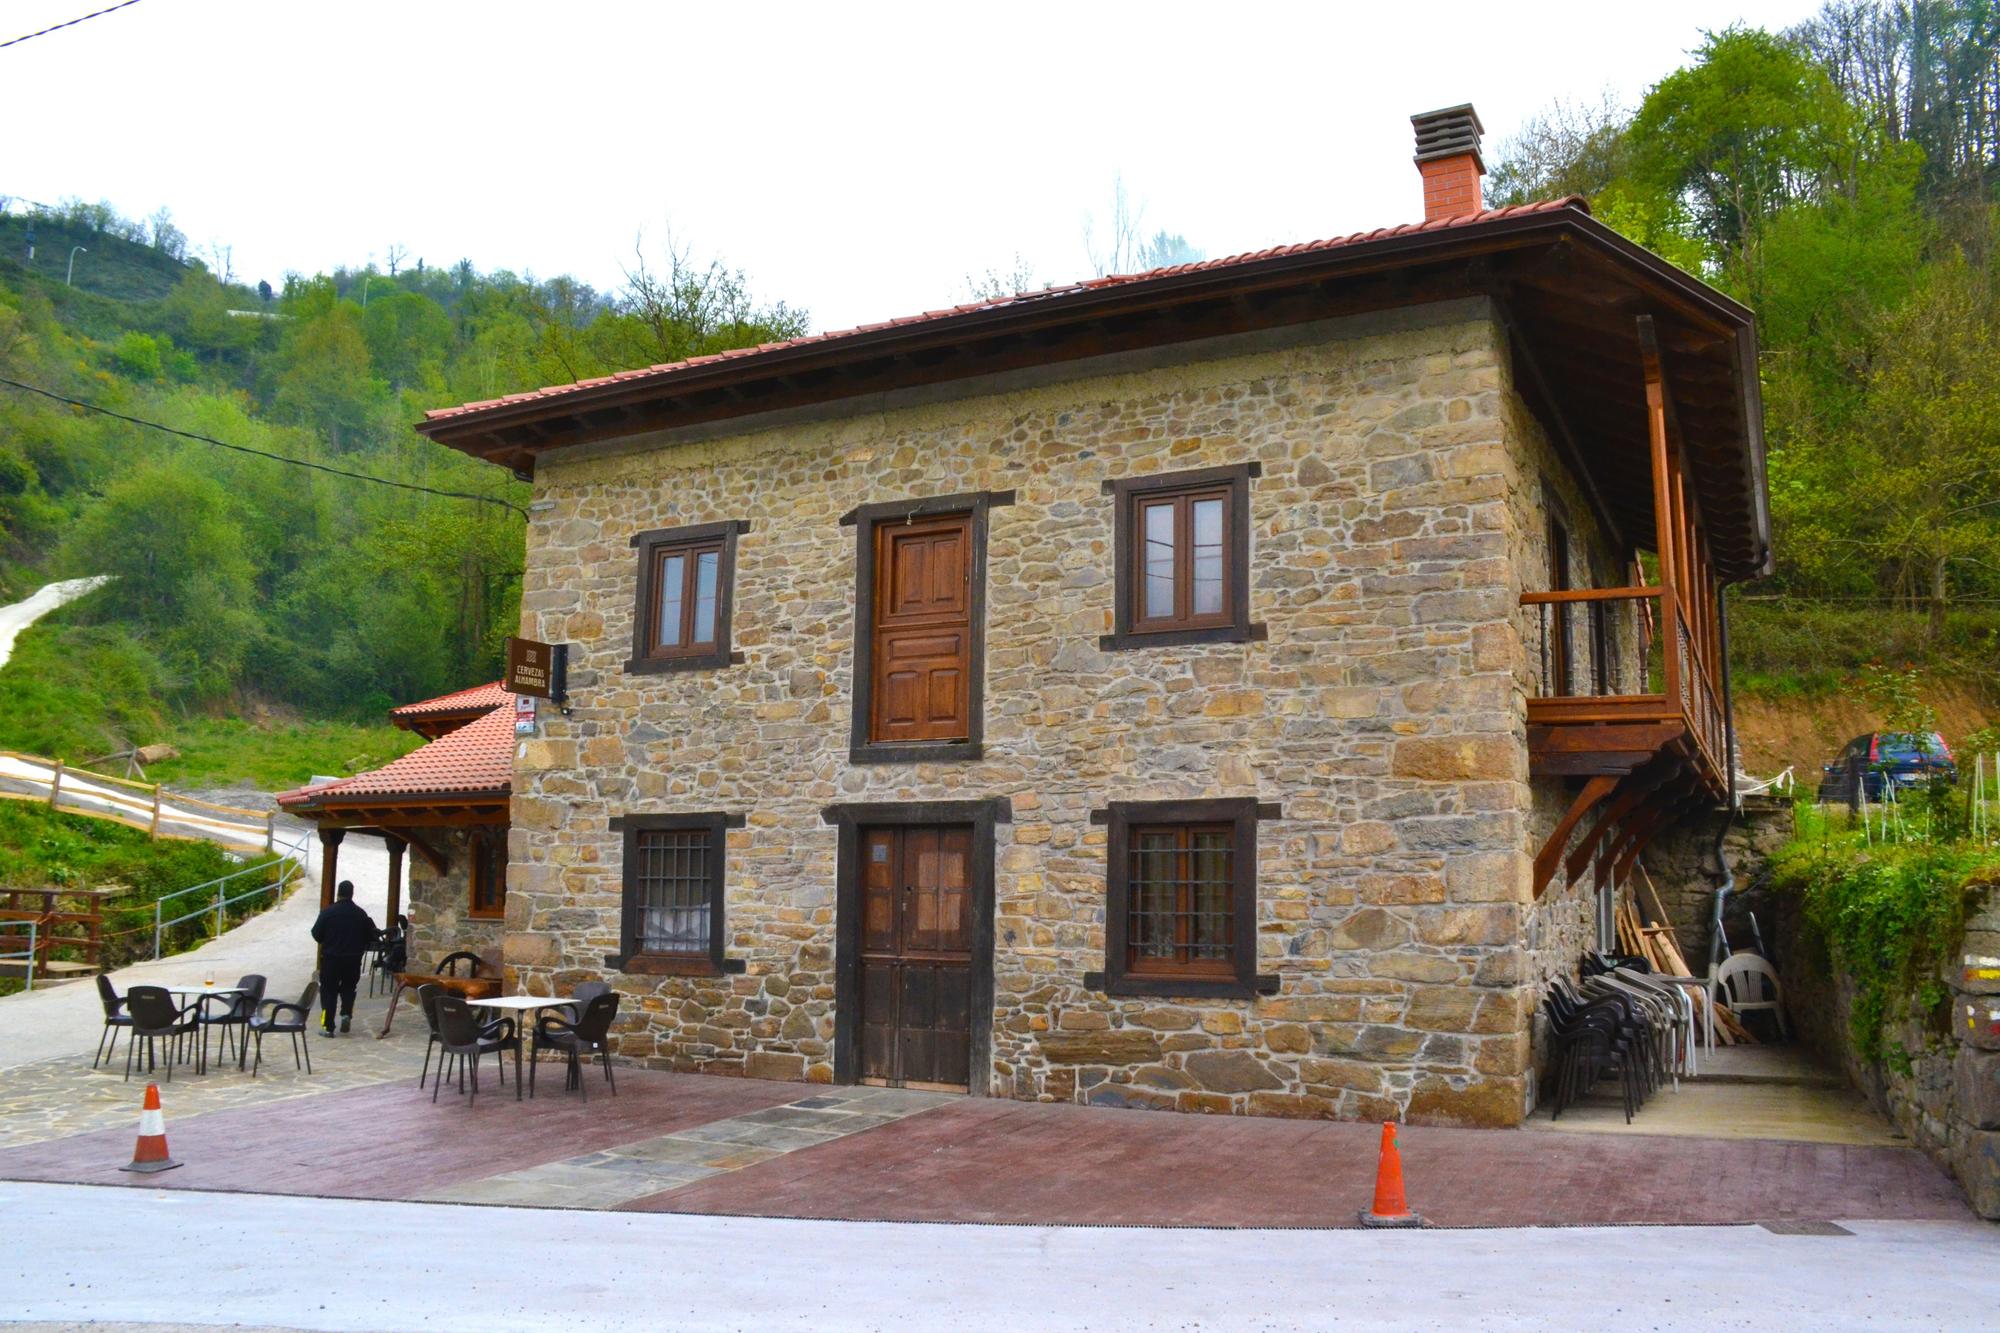 El bar restaurante Ca Felichu, en el pueblo de Sotiello, antes de empezar a montar la terraza en el exterior.